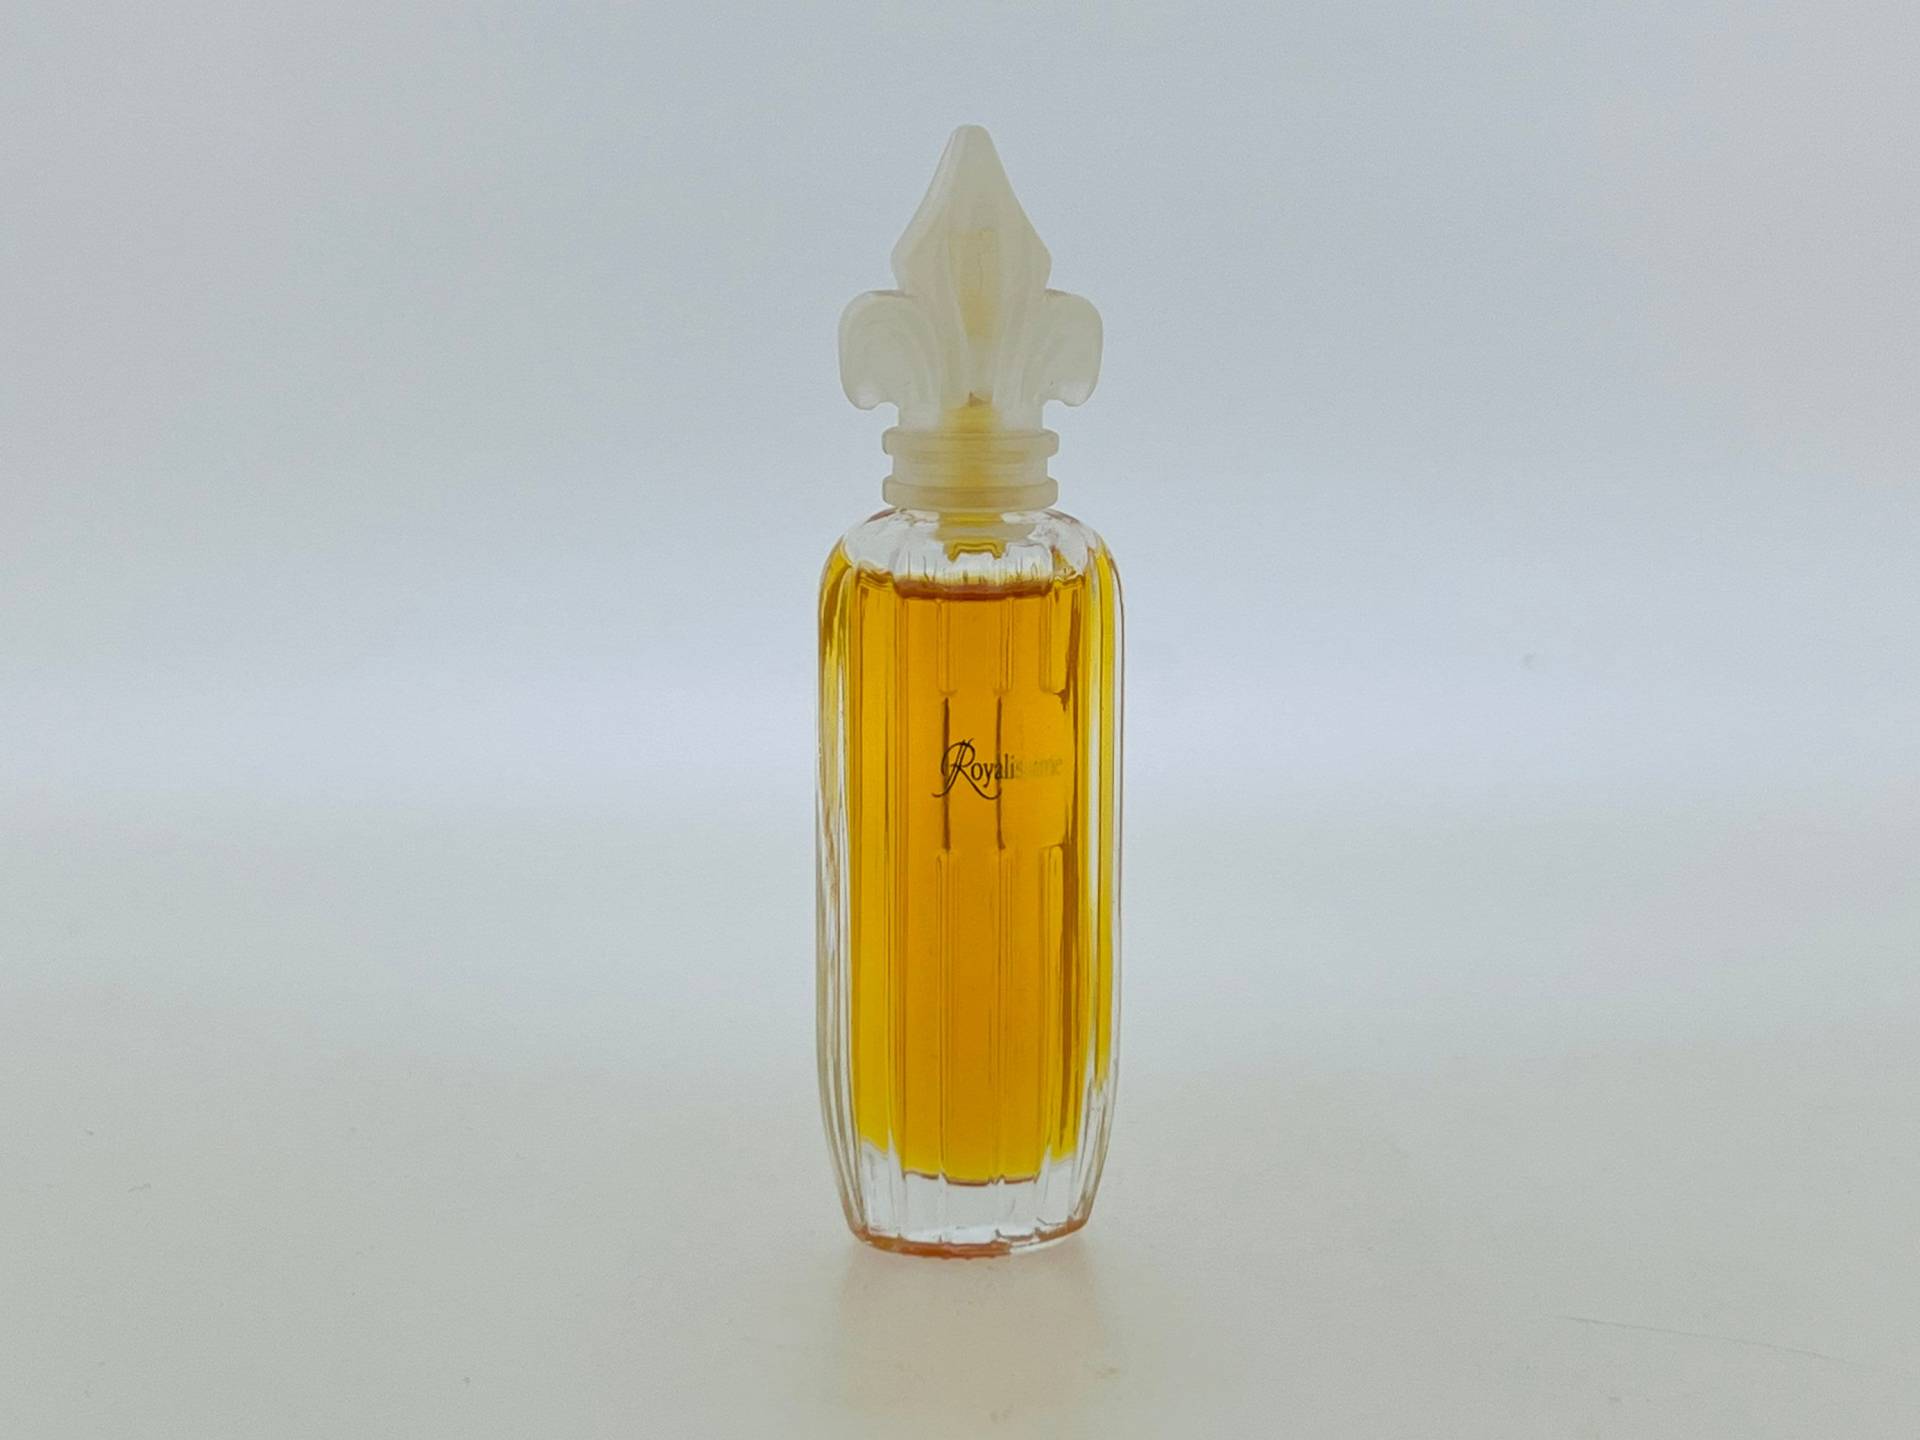 Vintage Miniatur Parfum, Royalissime, Prince Henri Pierre, D'orléans 1997 Eau De Toilette 7 Ml von Etsy - VintagePerfumeShop